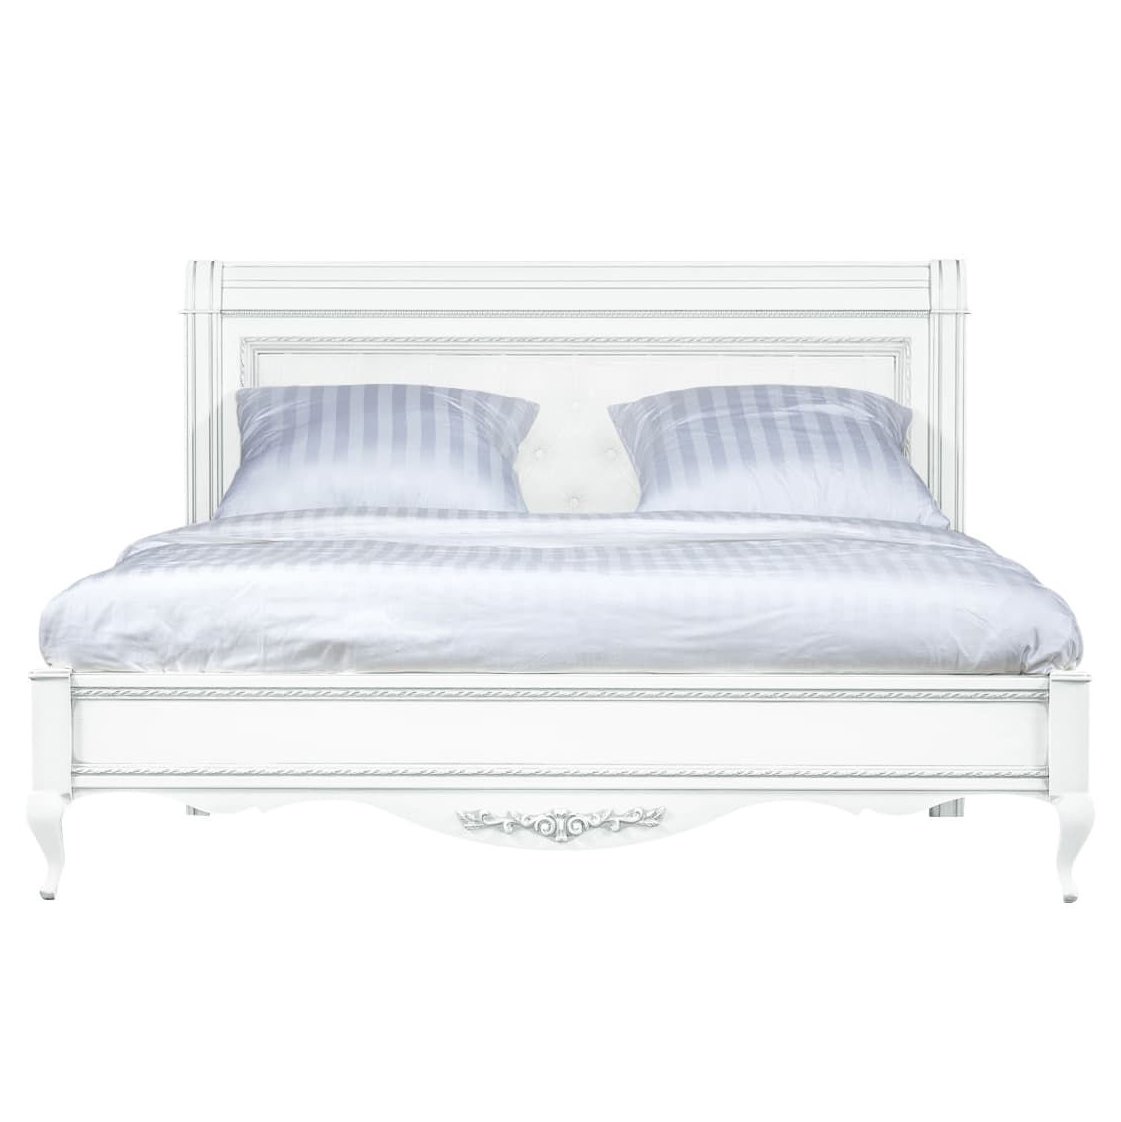 Кровать Timber Неаполь, двуспальная с мягким изголовьем 160x200 см, цвет: белый с серебром (Т-520/BA)Т-520